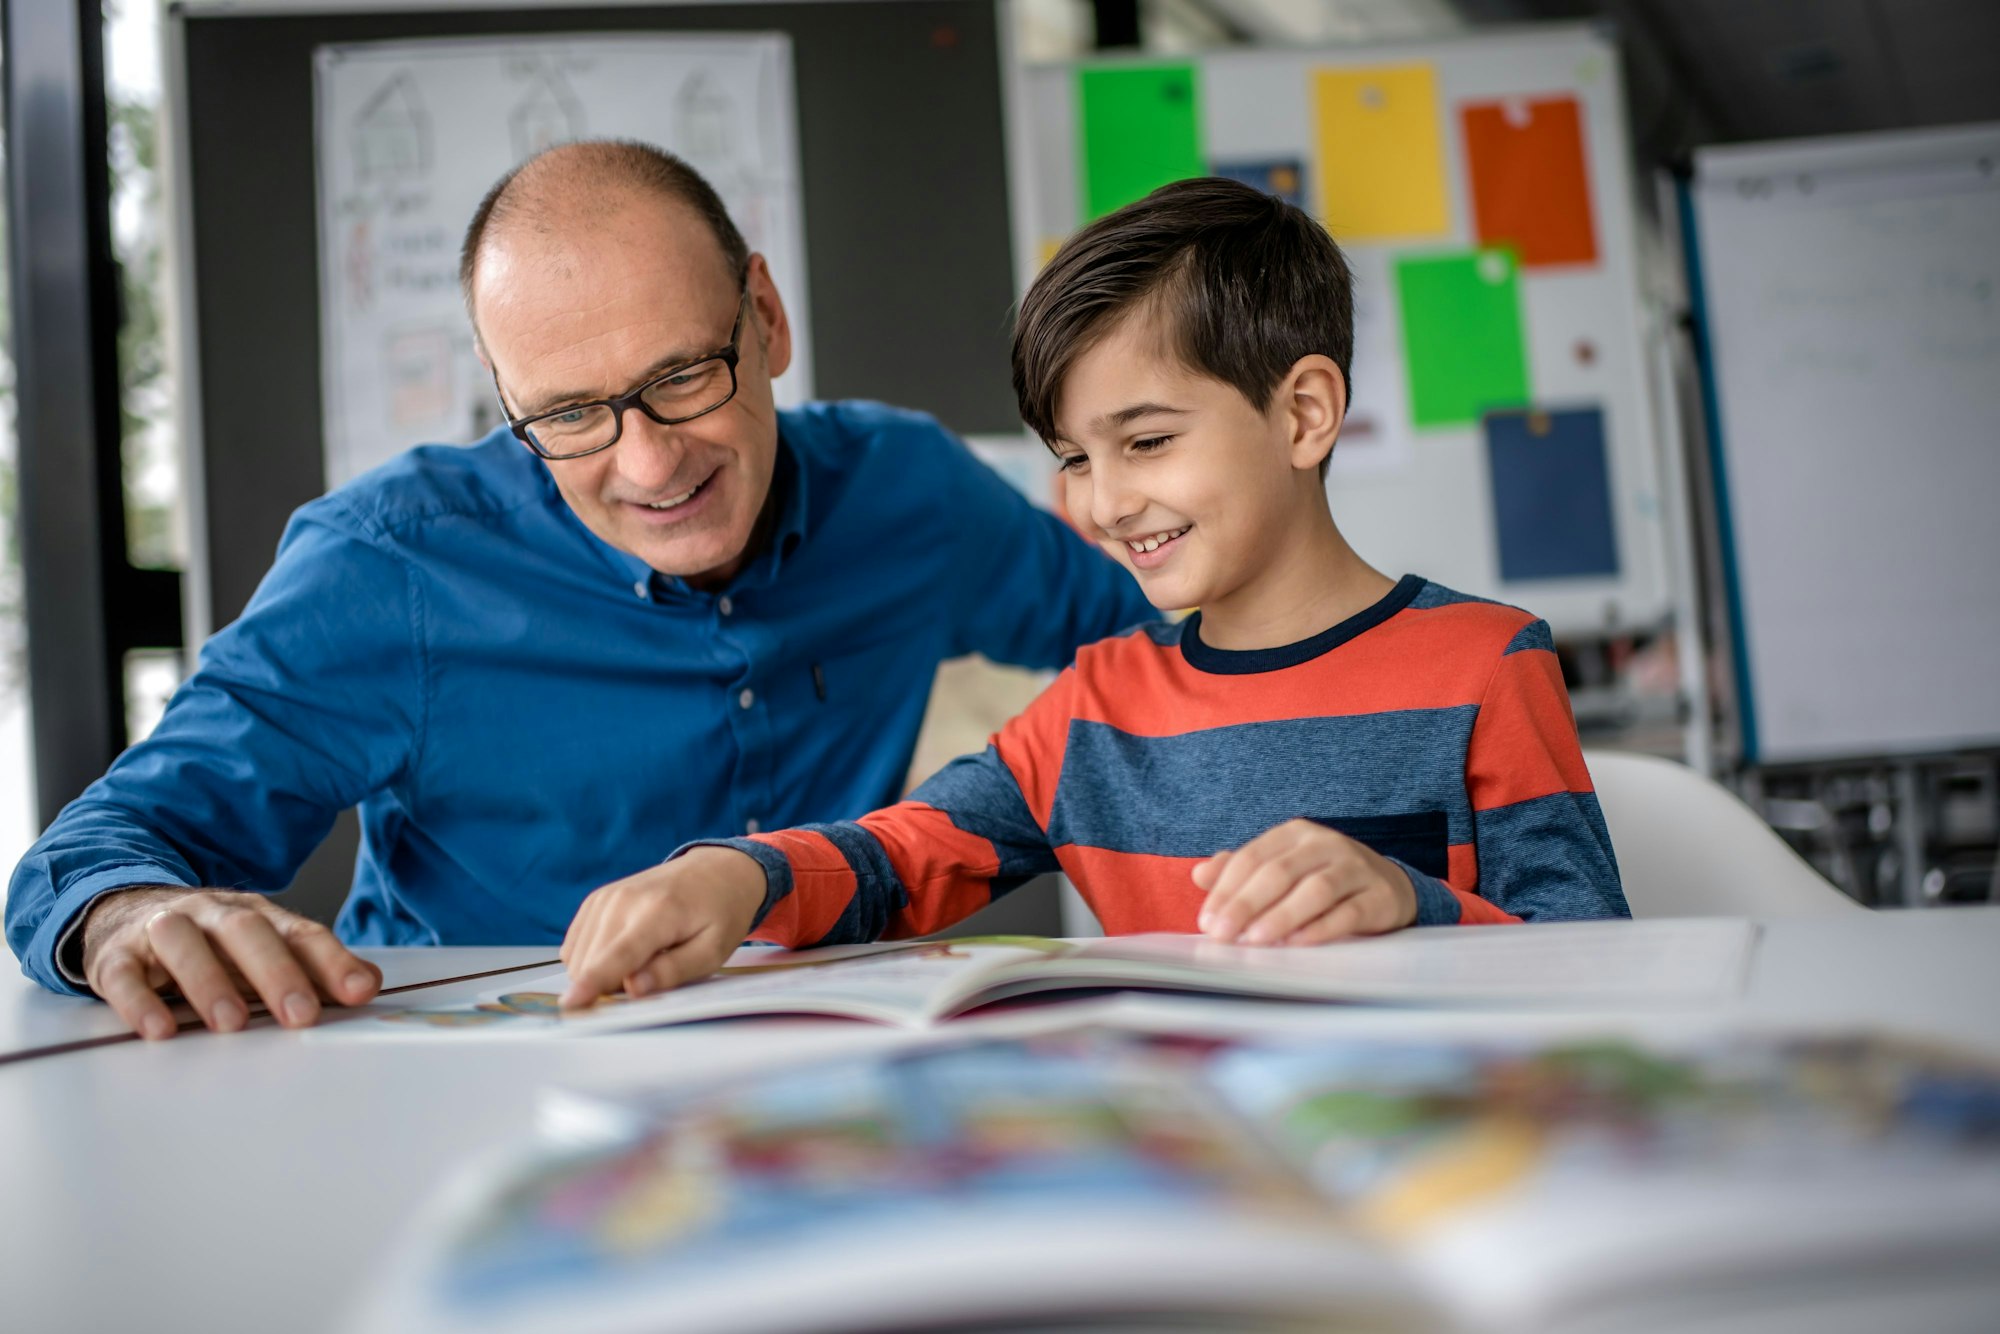 Mentor Andreas Endermann begleitet ein Kind beim Lesenlernen - das Bild zeigt die beiden, wie sie in einem Buch lesen, das vor ihnen auf dem Tisch liegt.